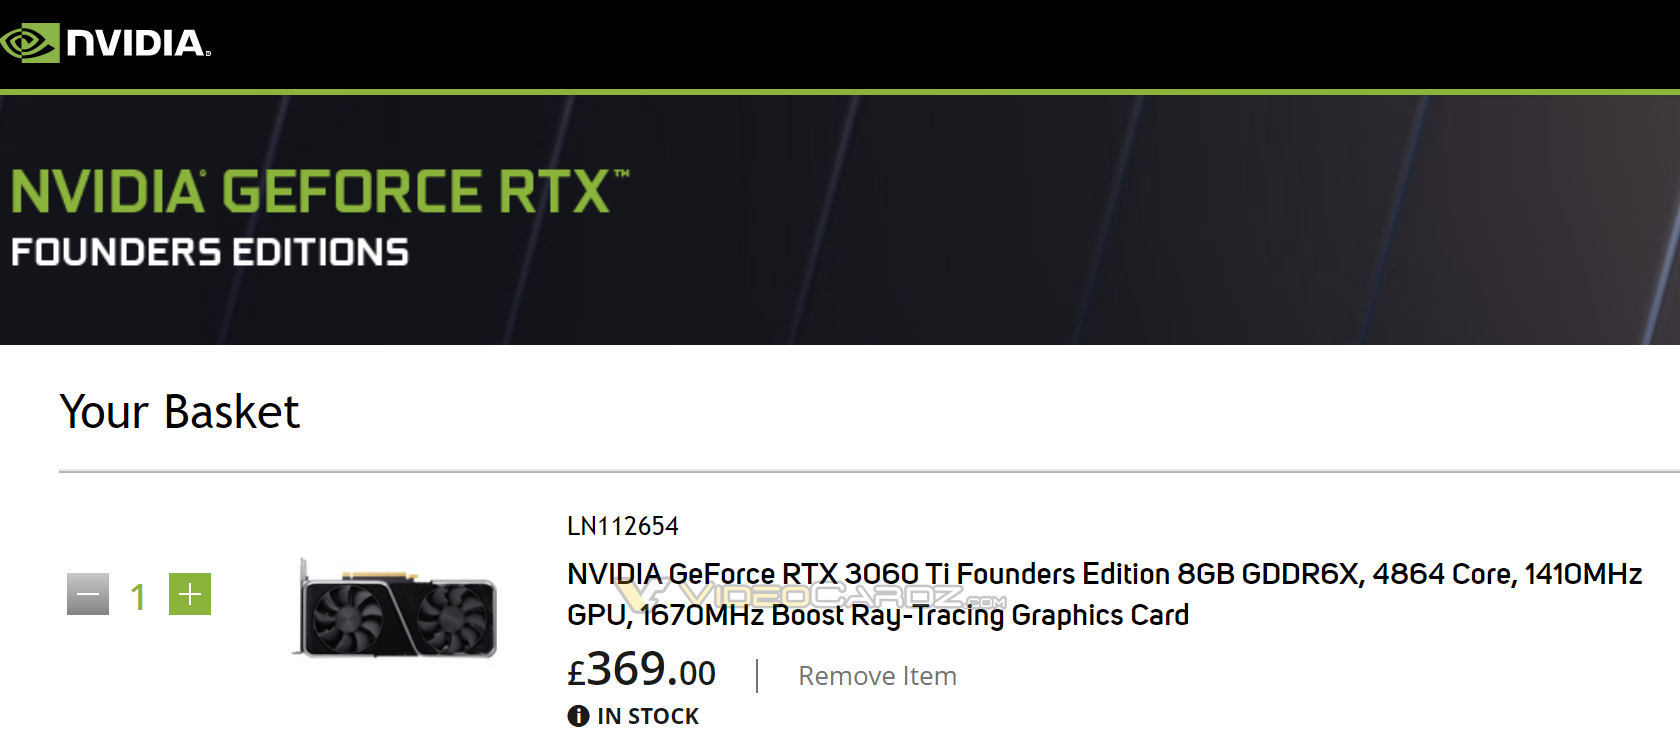 GeForce RTX 3060 i RTX 3060 Ti - przecieki wskazują na nowe wersje z pamięciami GDDR6X